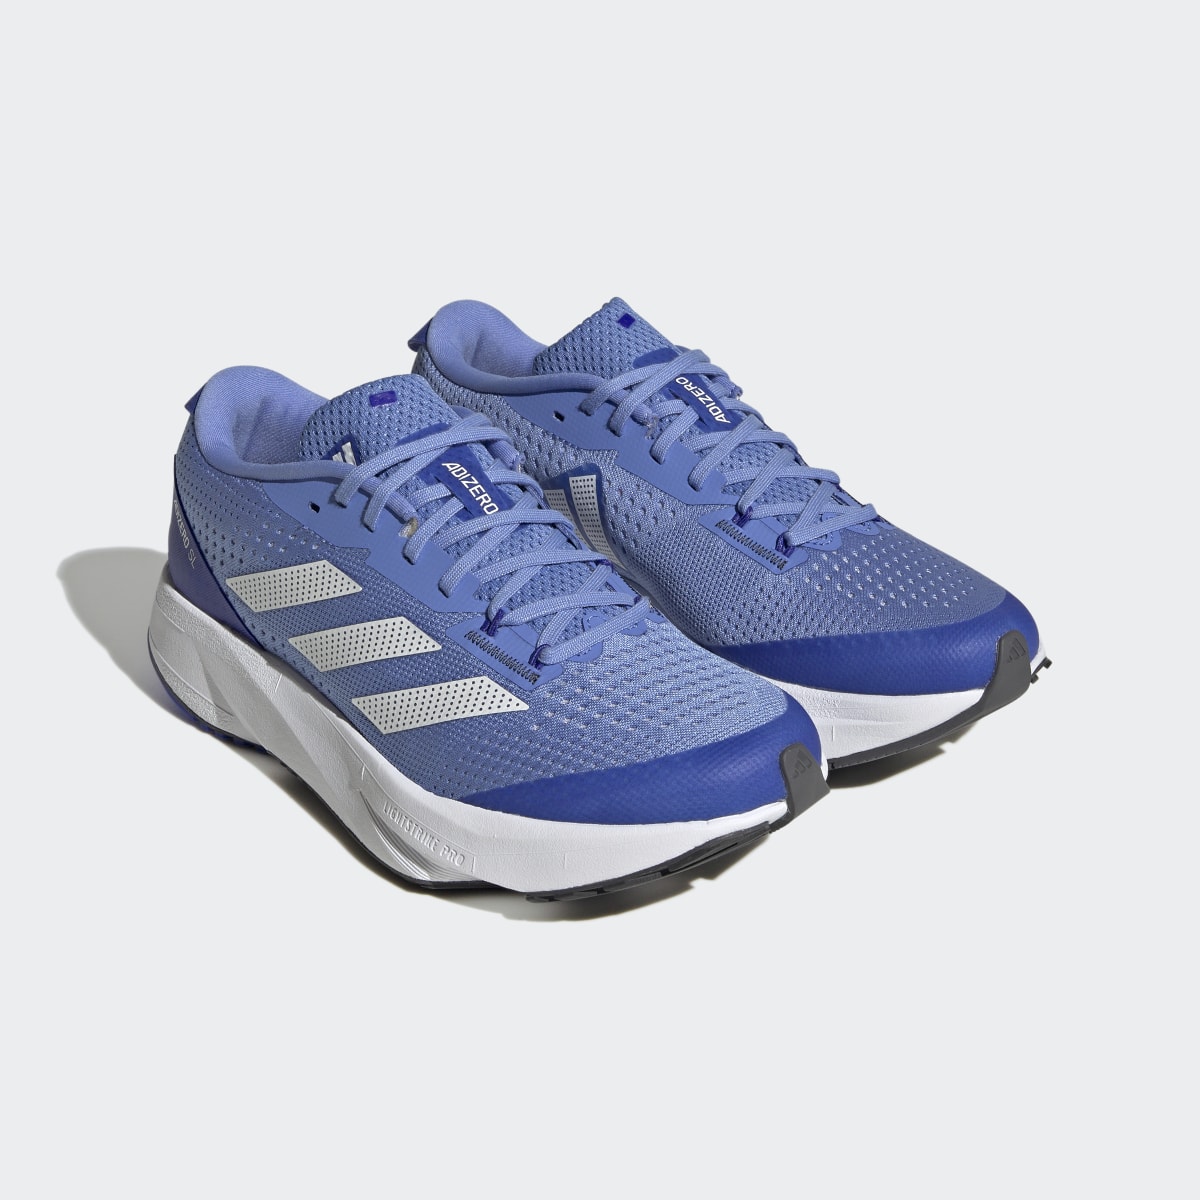 Adidas Adizero SL Running Shoes. 5